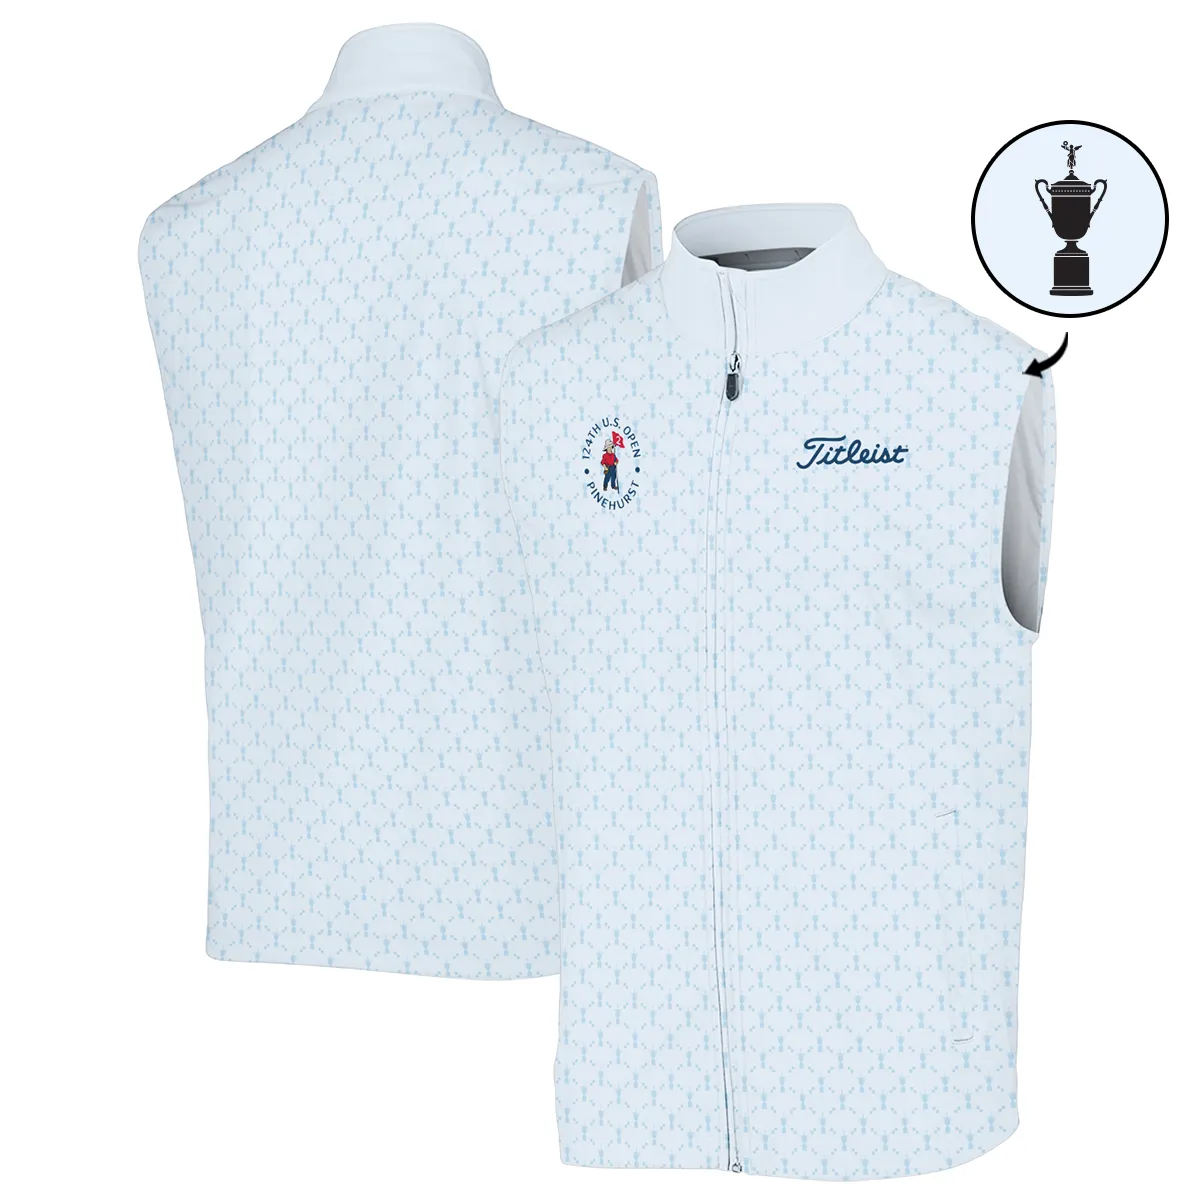 Golf Sport Pattern Blue Sport Uniform 124th U.S. Open Pinehurst Titleist Zipper Polo Shirt Style Classic